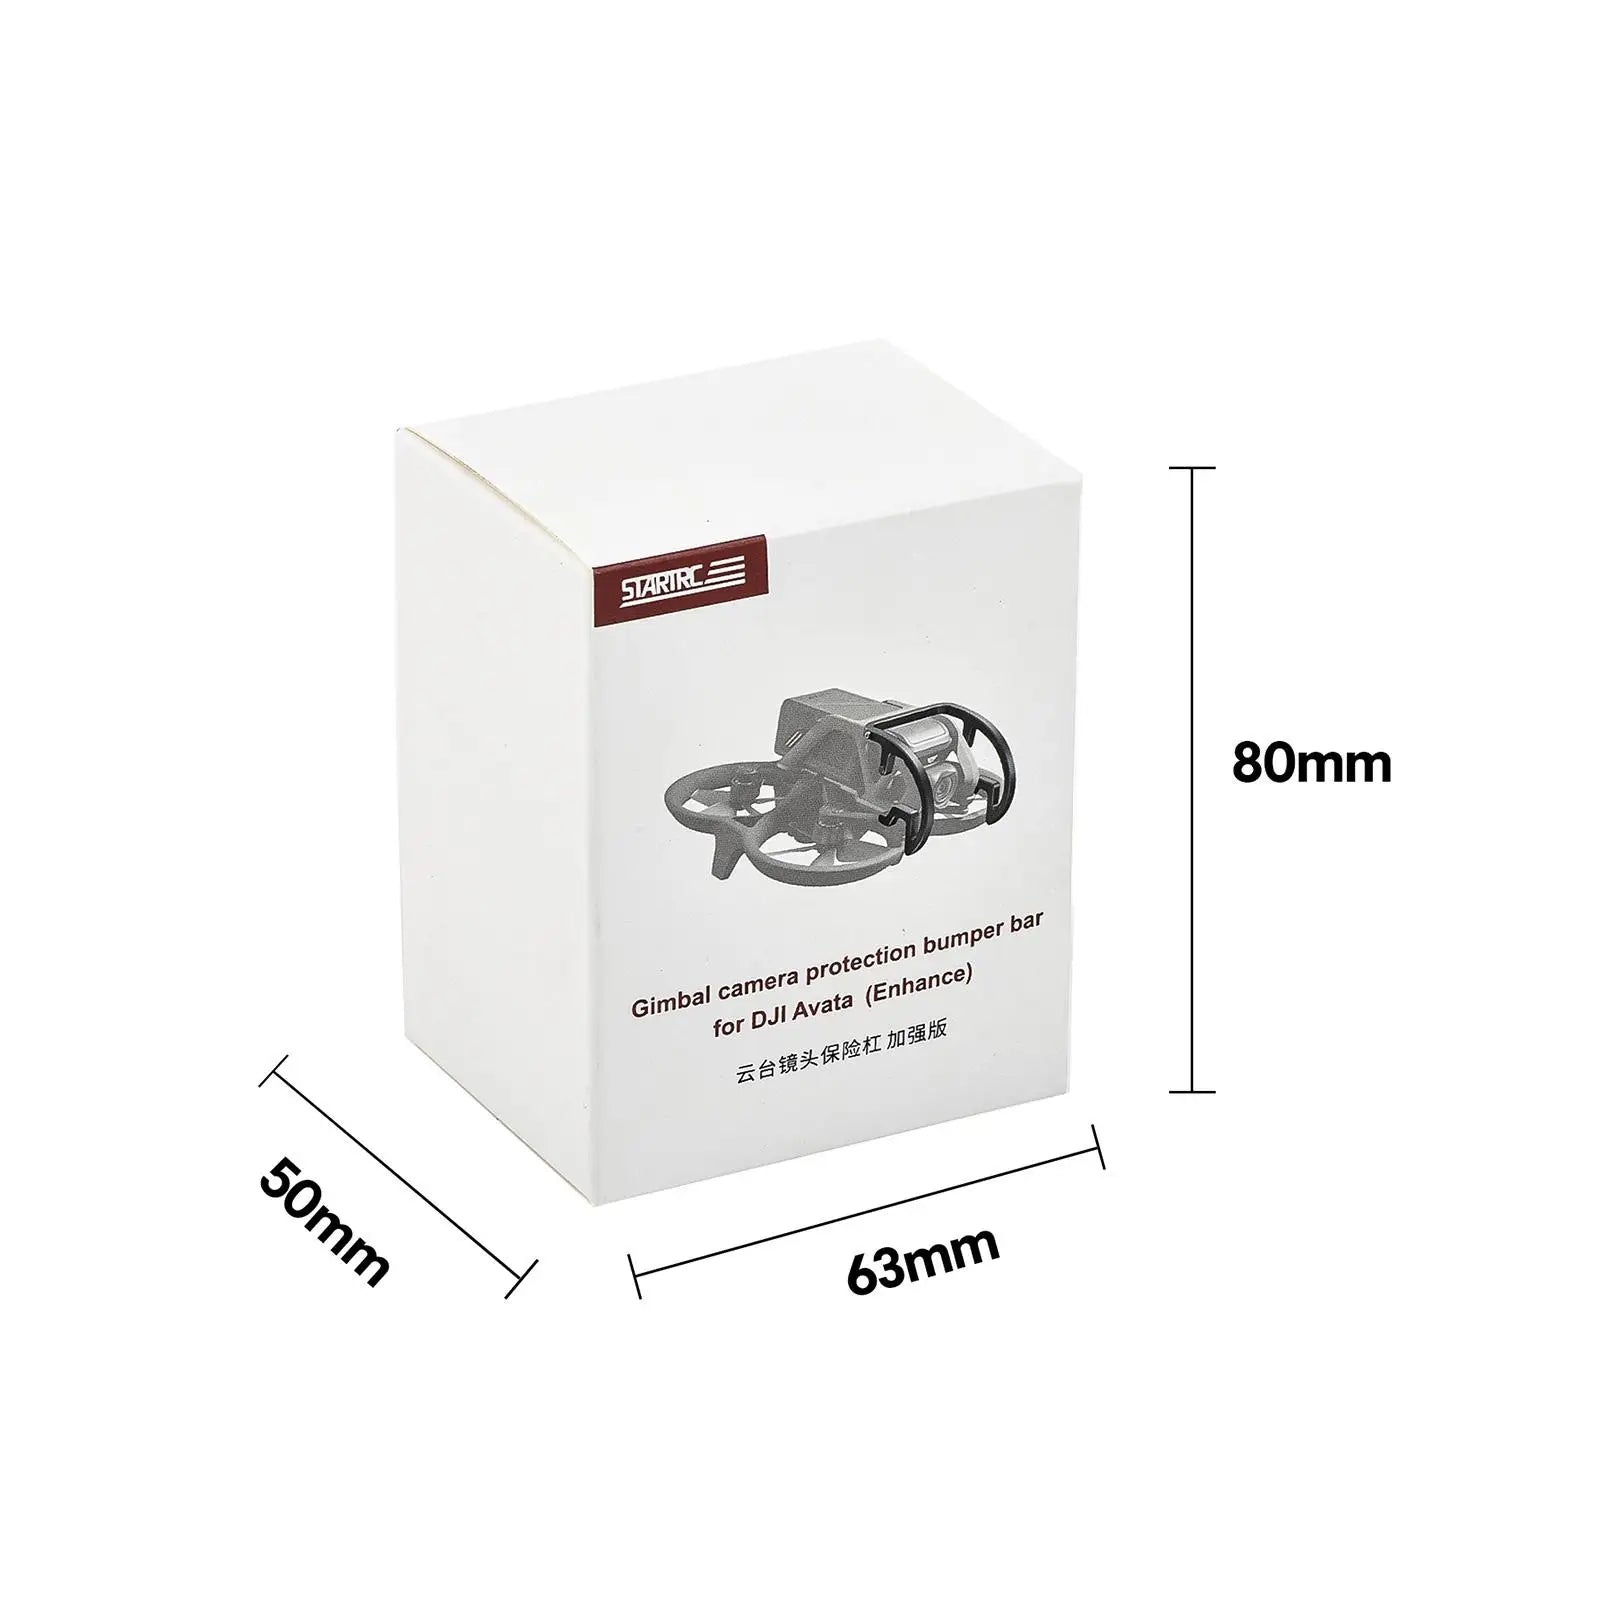 DJI Avata Lens Protection - Gimbal Camera, DJI Avata Lens Protection, 8Omm for DJI SVARIRC bar bumper _ protection (Enhance